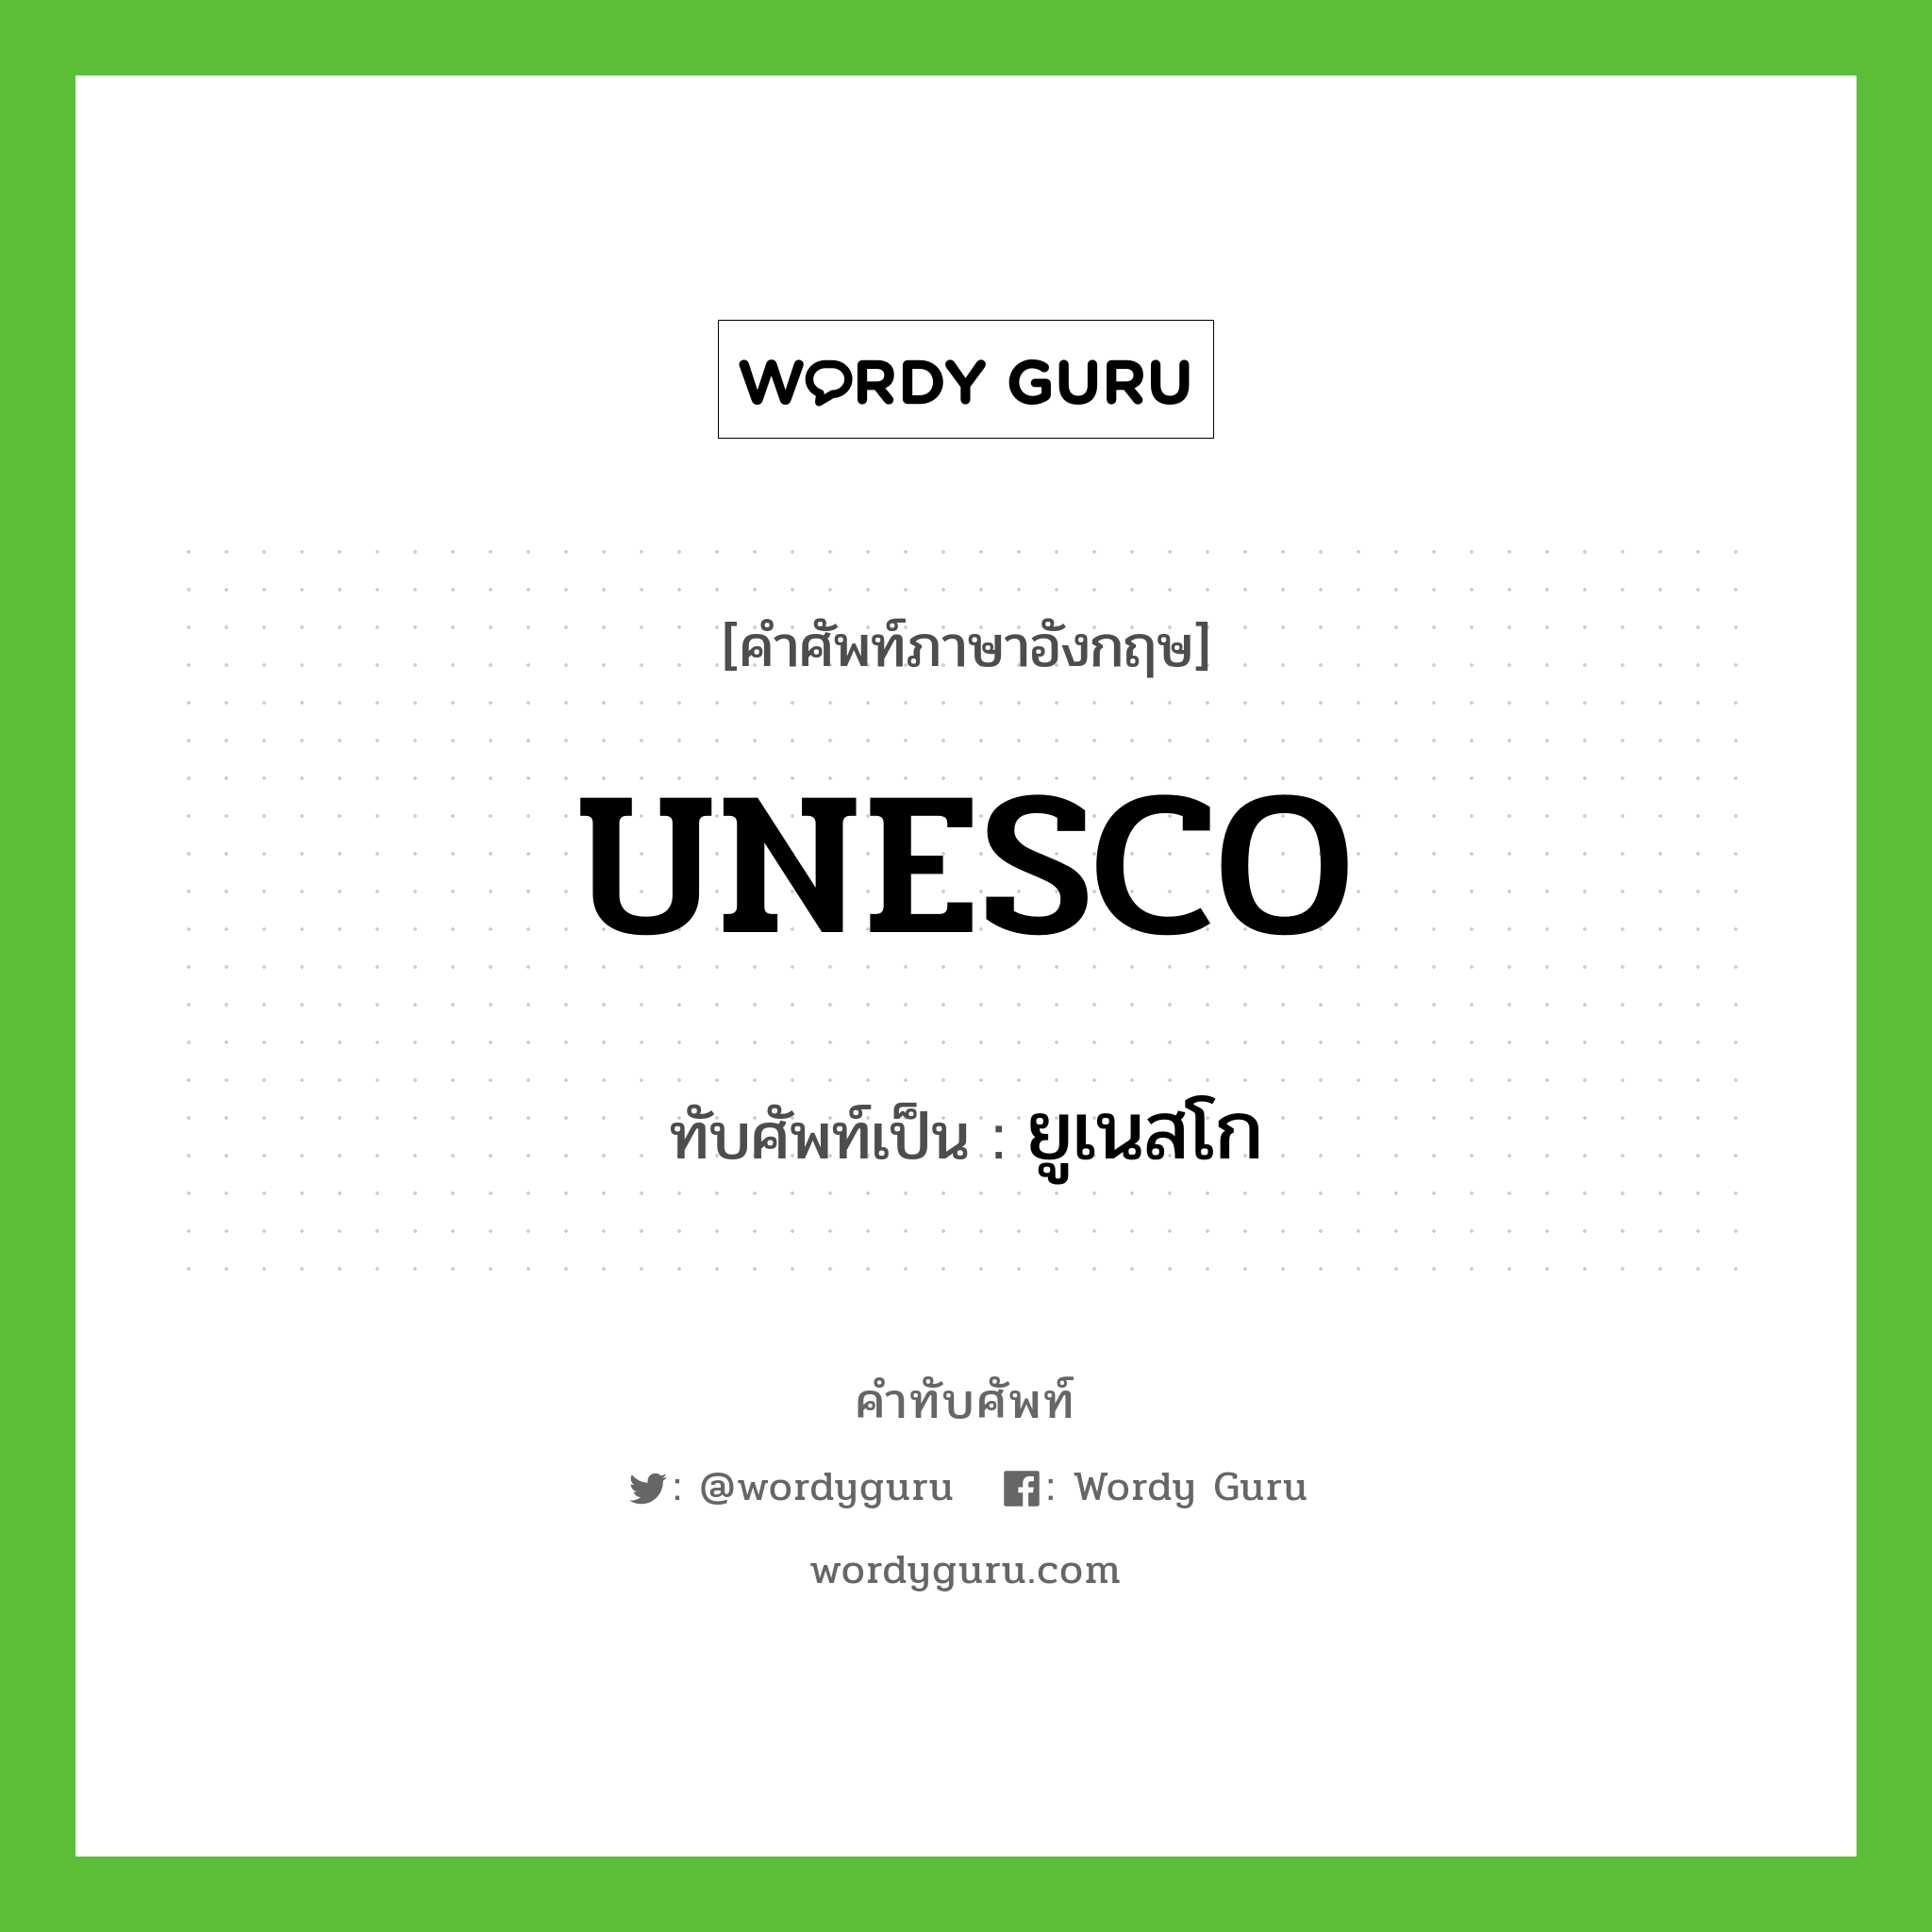 ยูเนสโก เขียนอย่างไร?, คำศัพท์ภาษาอังกฤษ ยูเนสโก ทับศัพท์เป็น UNESCO